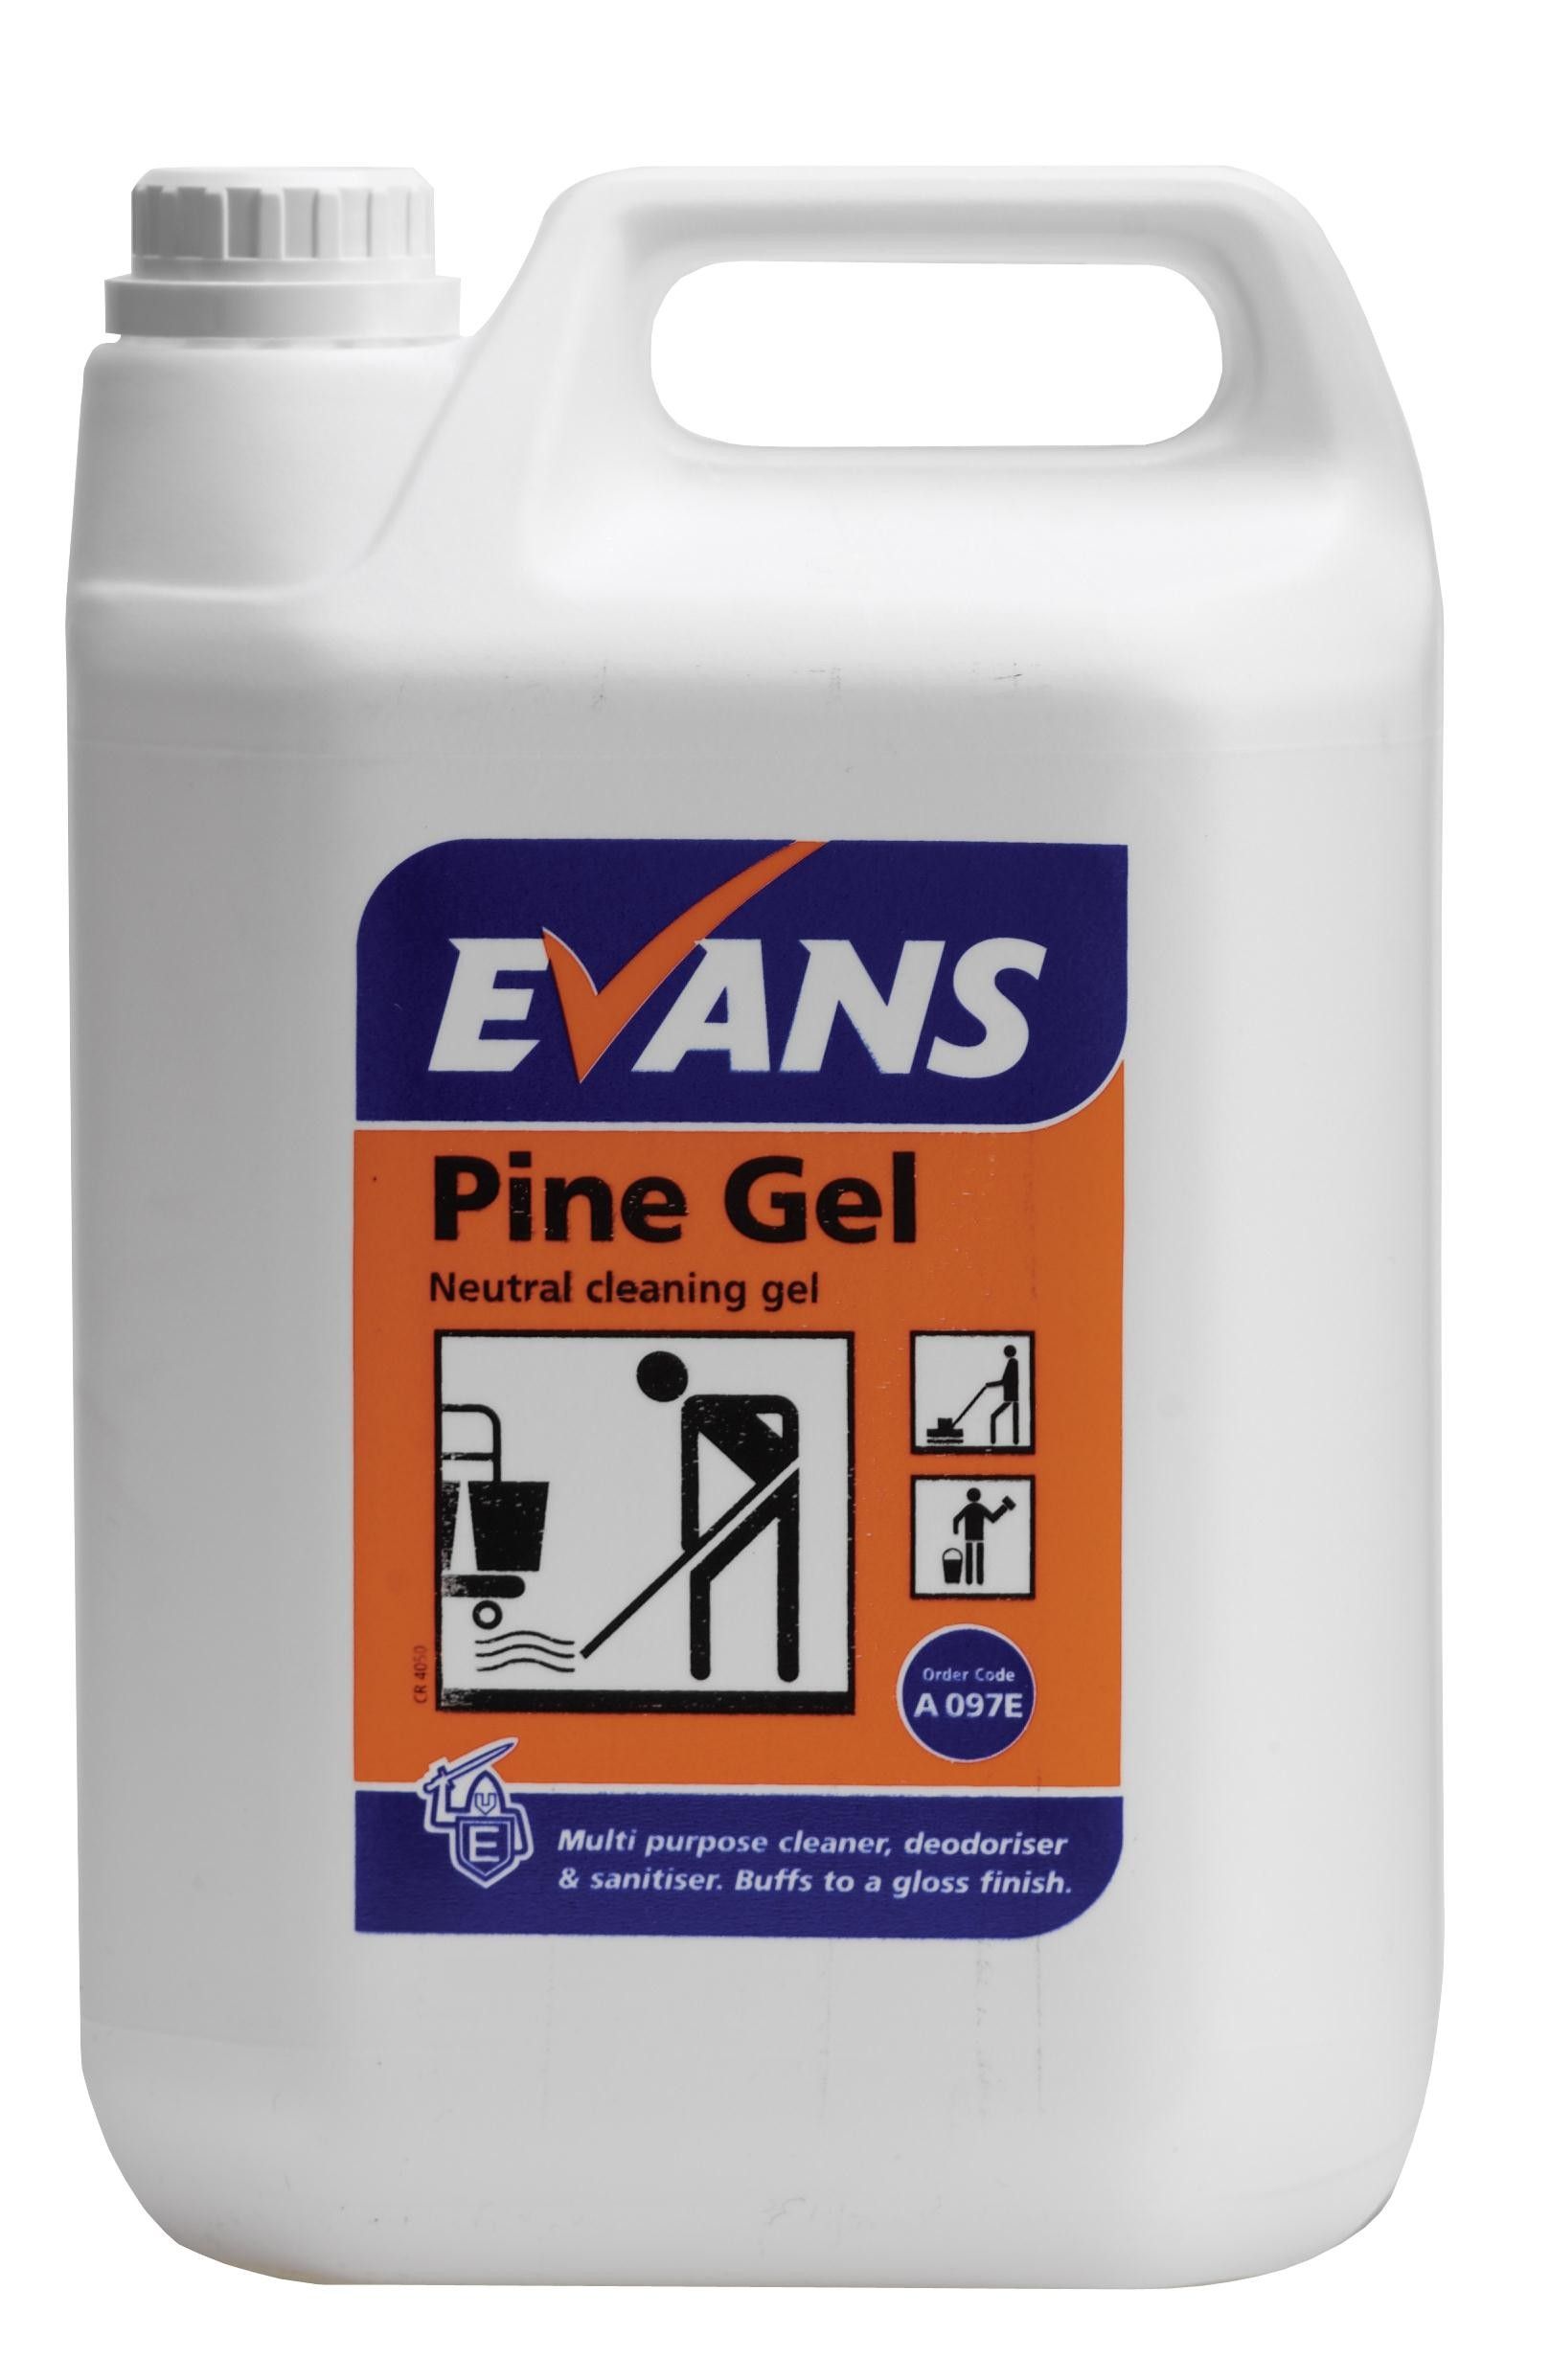 Evans Pine Gel - Cleaning & Deodorising Gel  5 Ltr